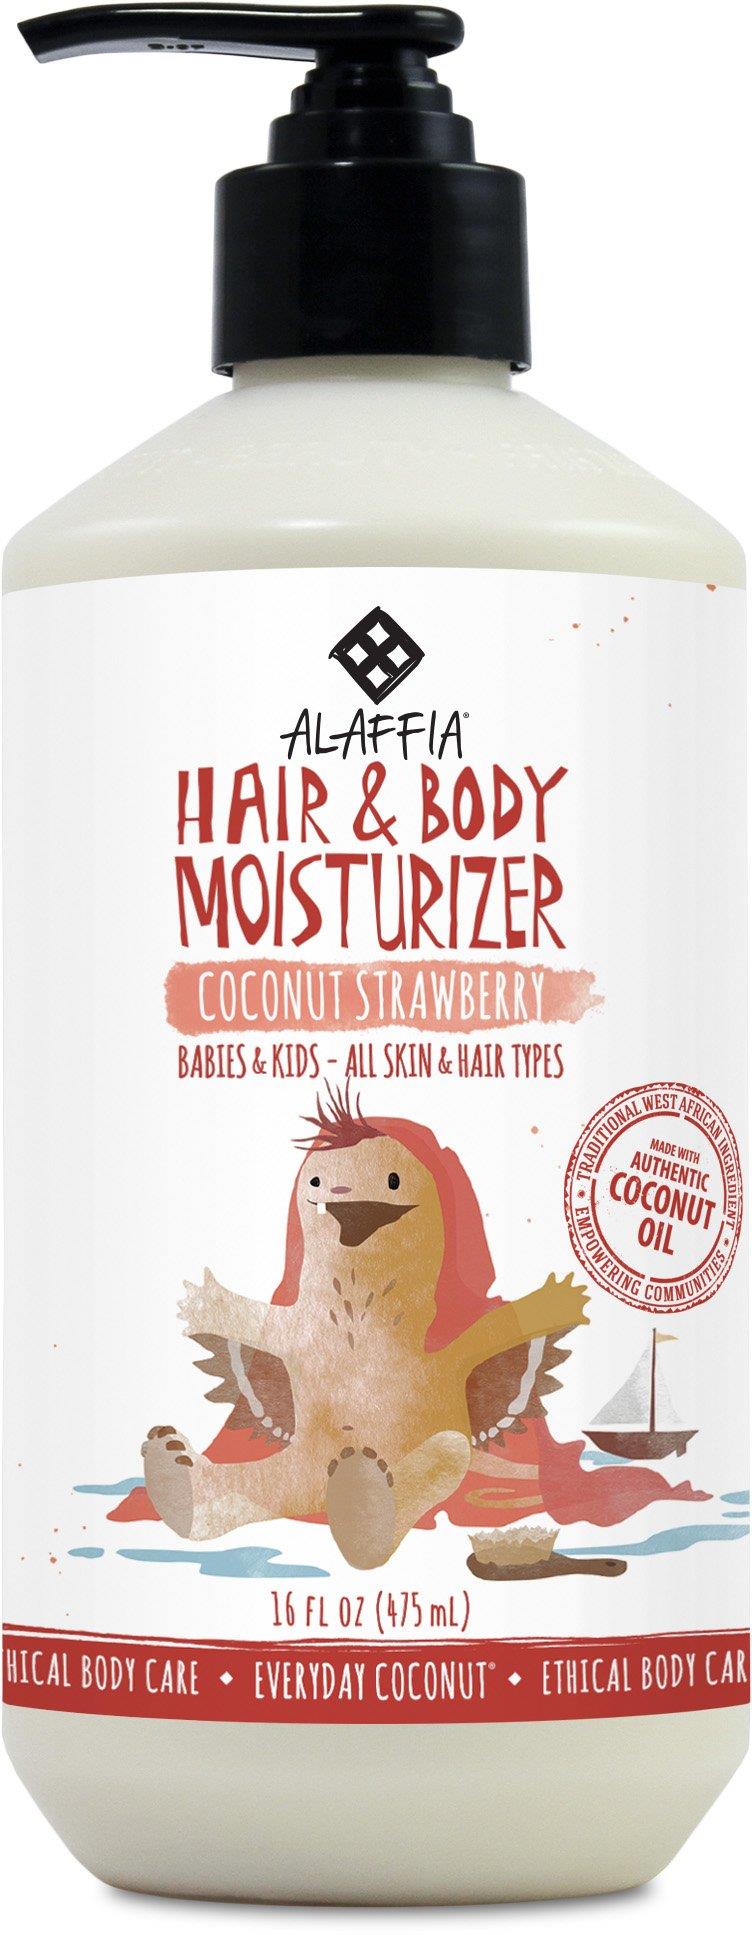 Alaffia Babies & Kids Coconut Hair & Body Moisturizer Coconut Strawberry